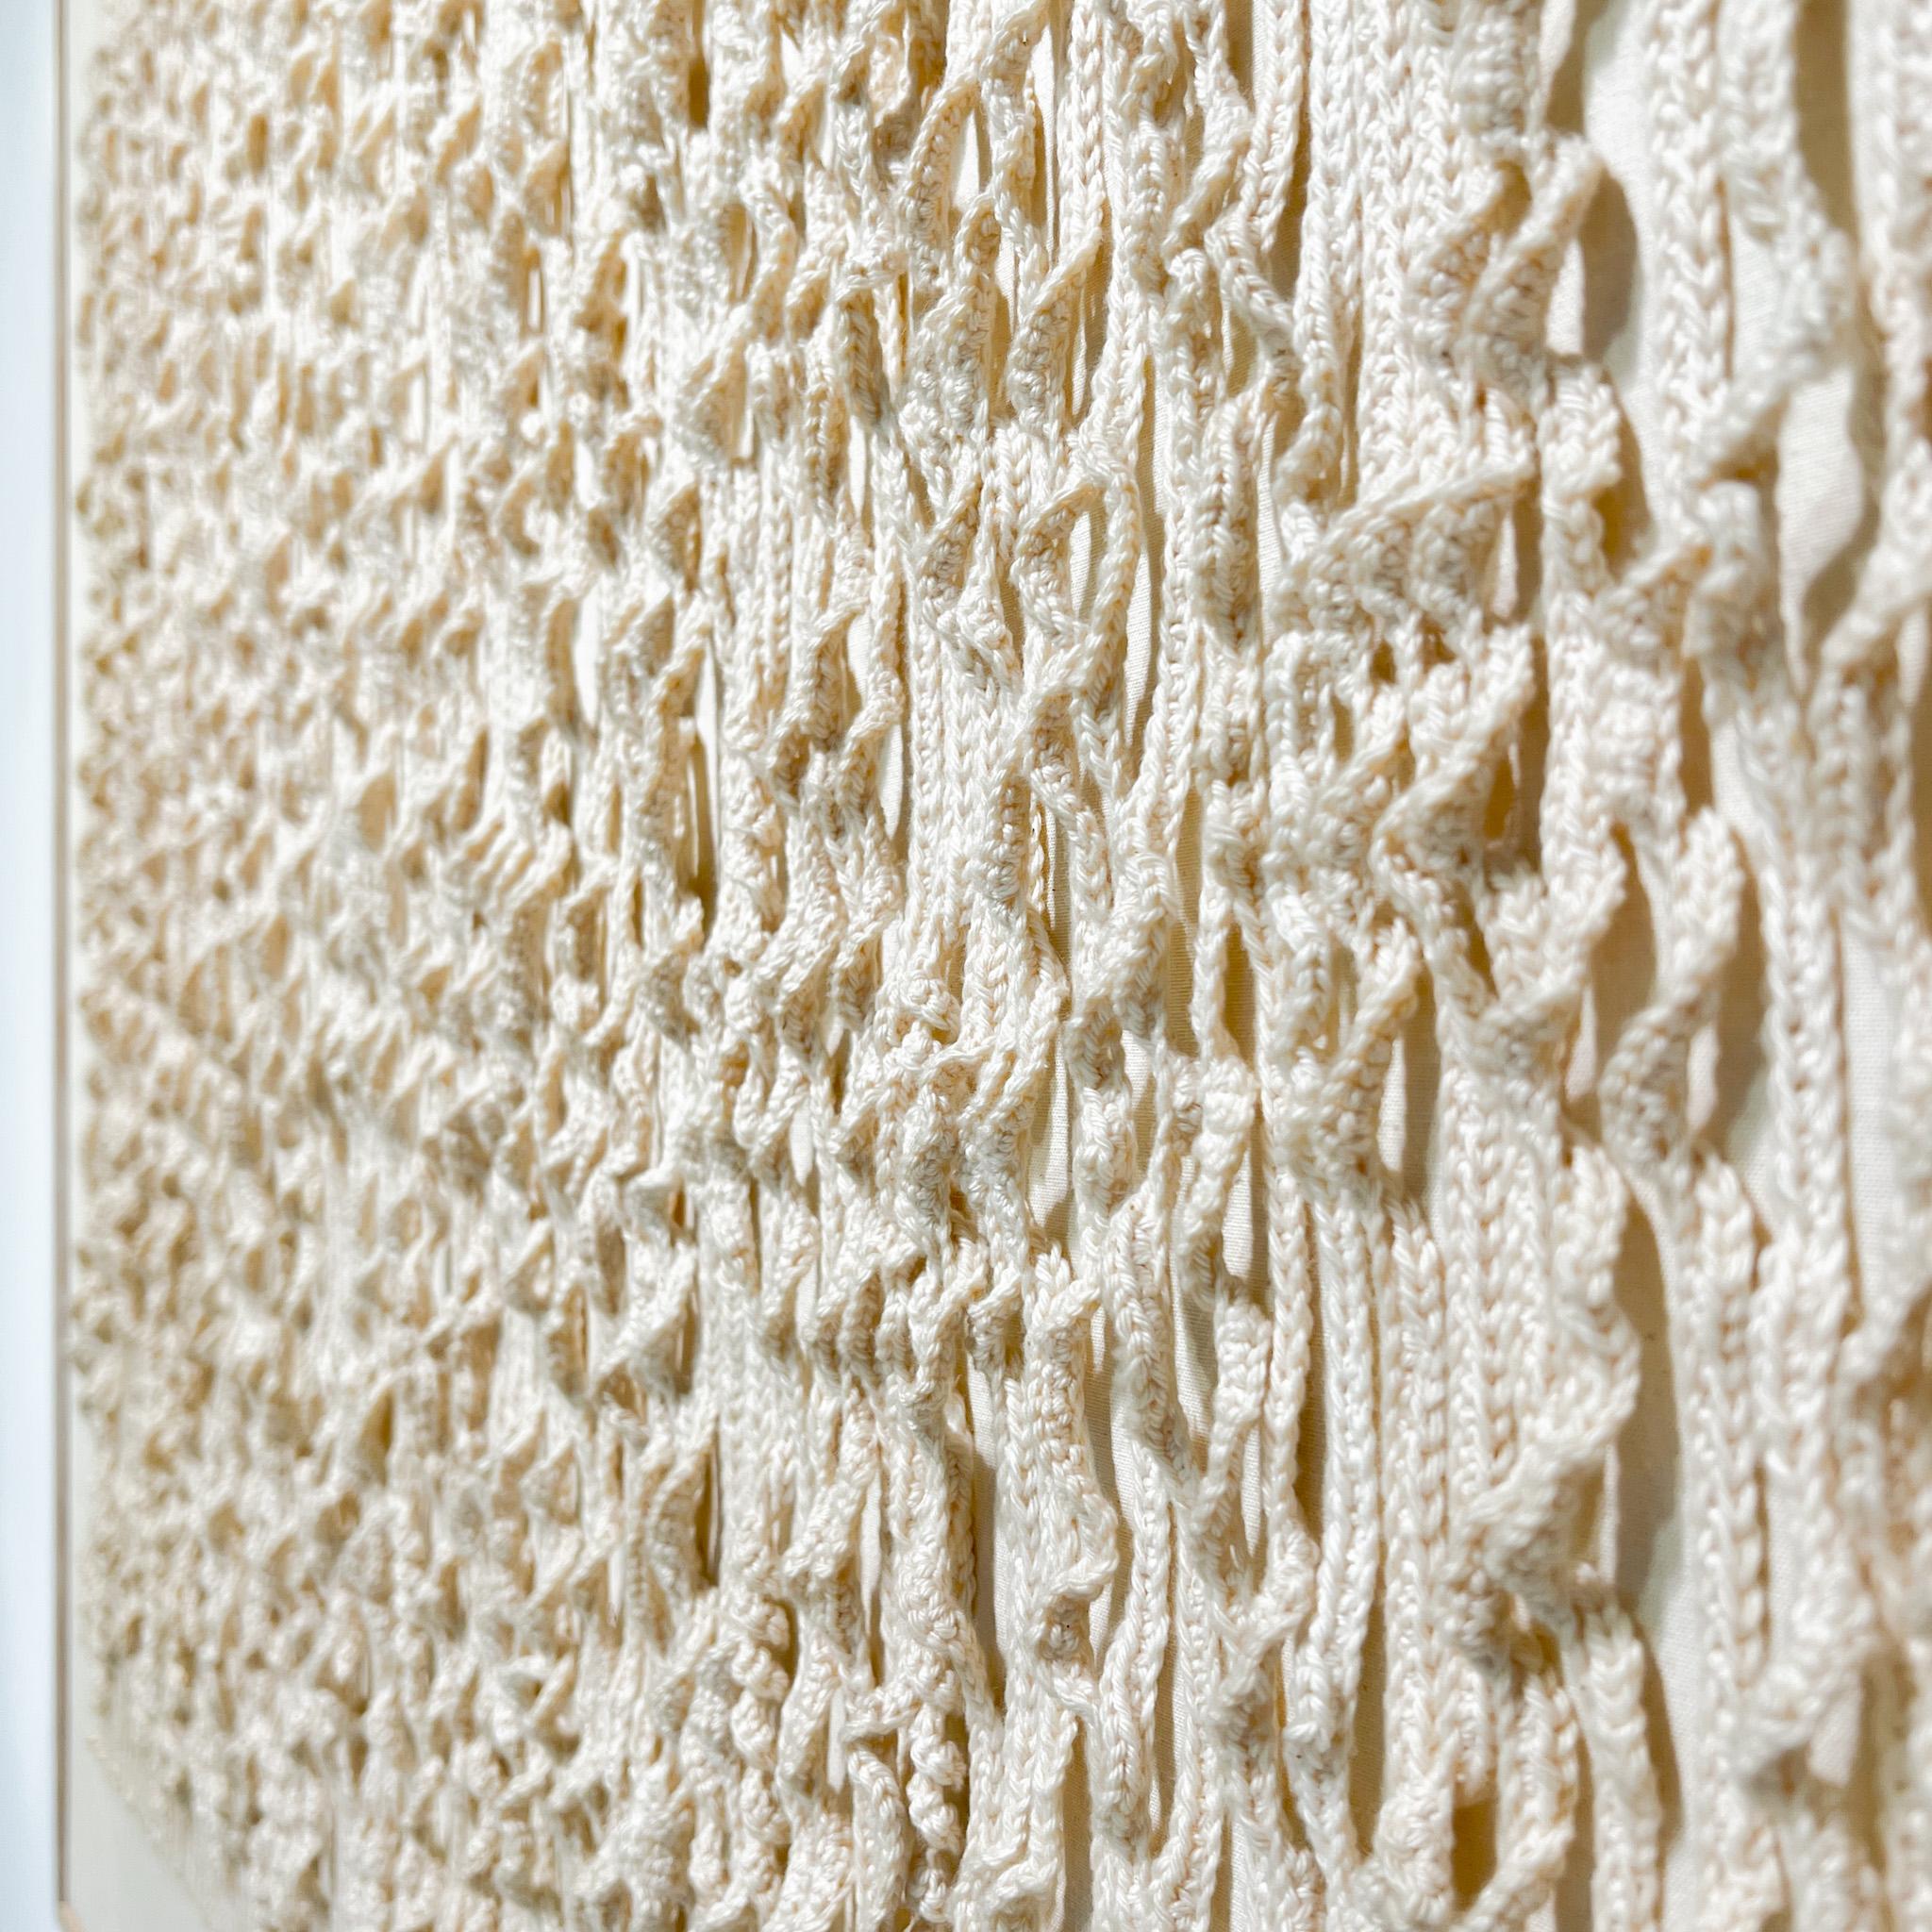 Hand-Woven Dutch Minimalist / Zero Textile Woven Lines Artwork in White Fabric